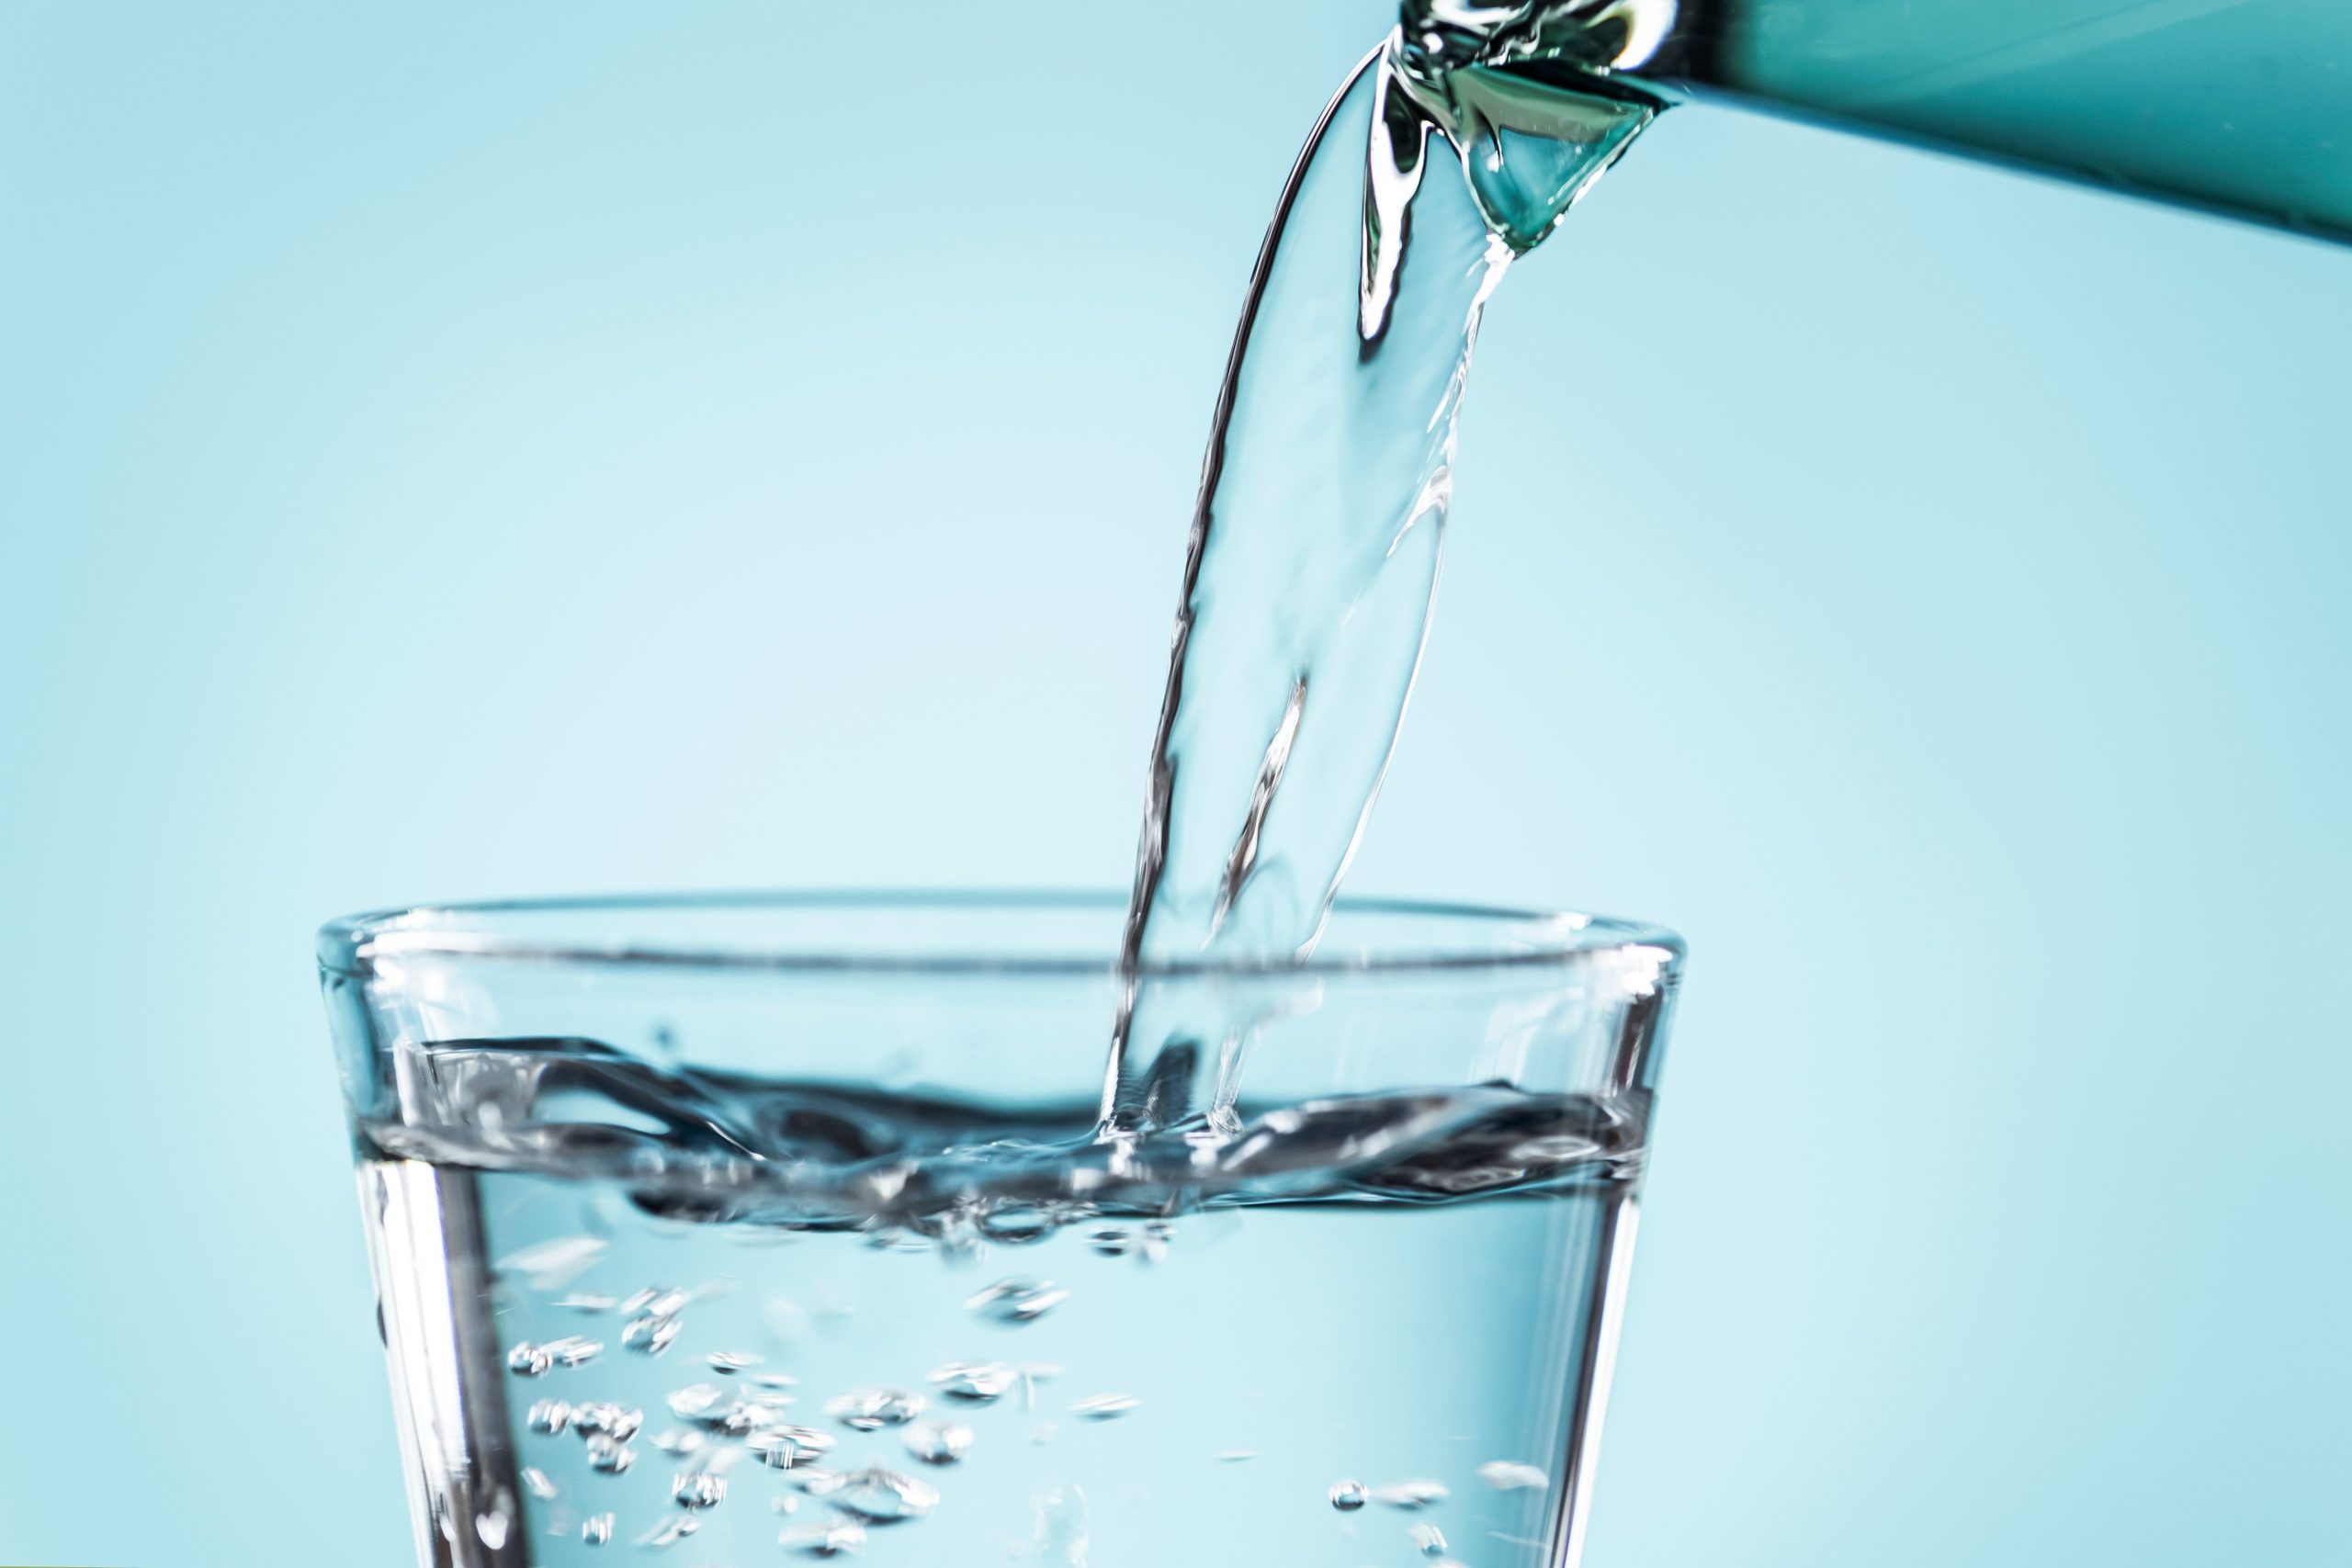 ضرورة شرب الماء بسبب المخاطر الصحية